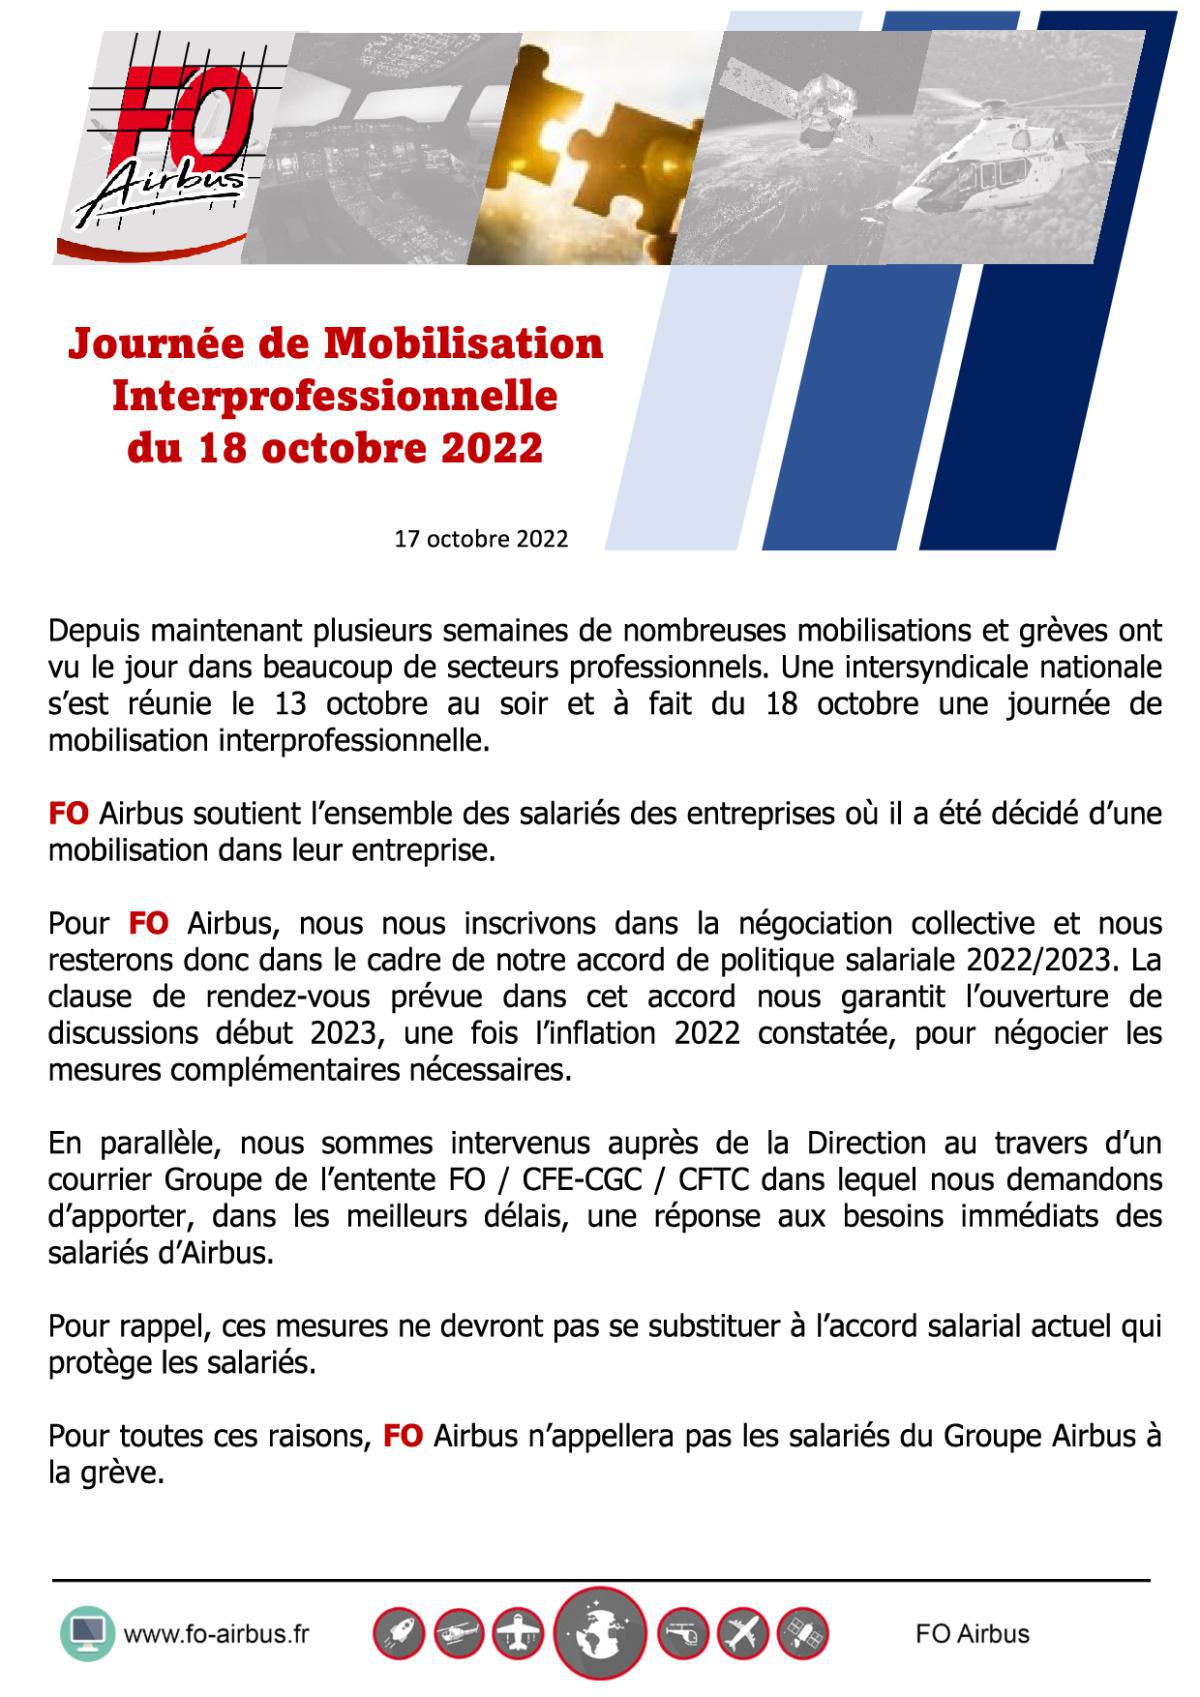 Info : Journée de Mobilisation Interprofessionnelle du 18 octobre 2022